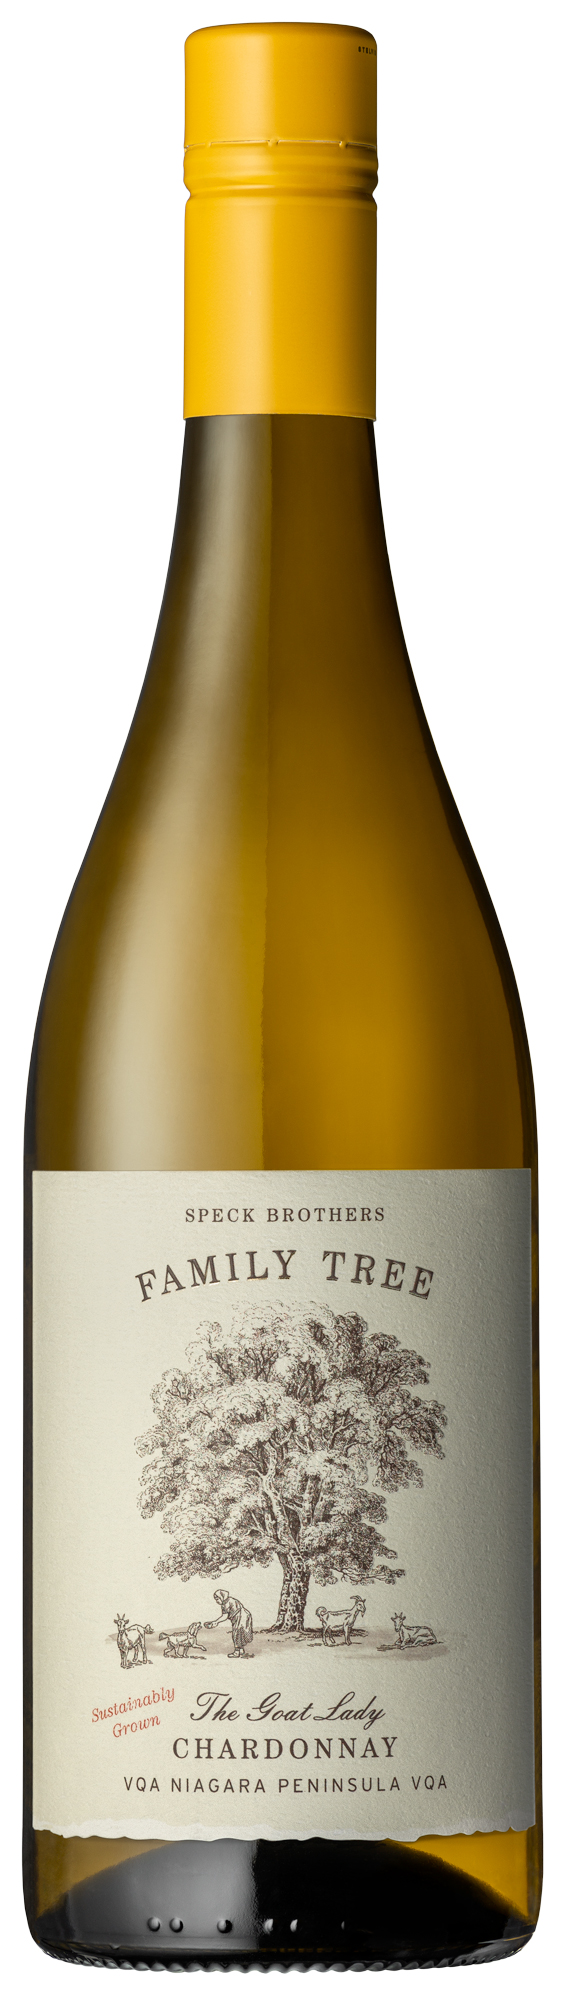 Speck Bros. Family Tree ‘The Goat Lady’ Chardonnay 2022, VQA Niagara Peninsula